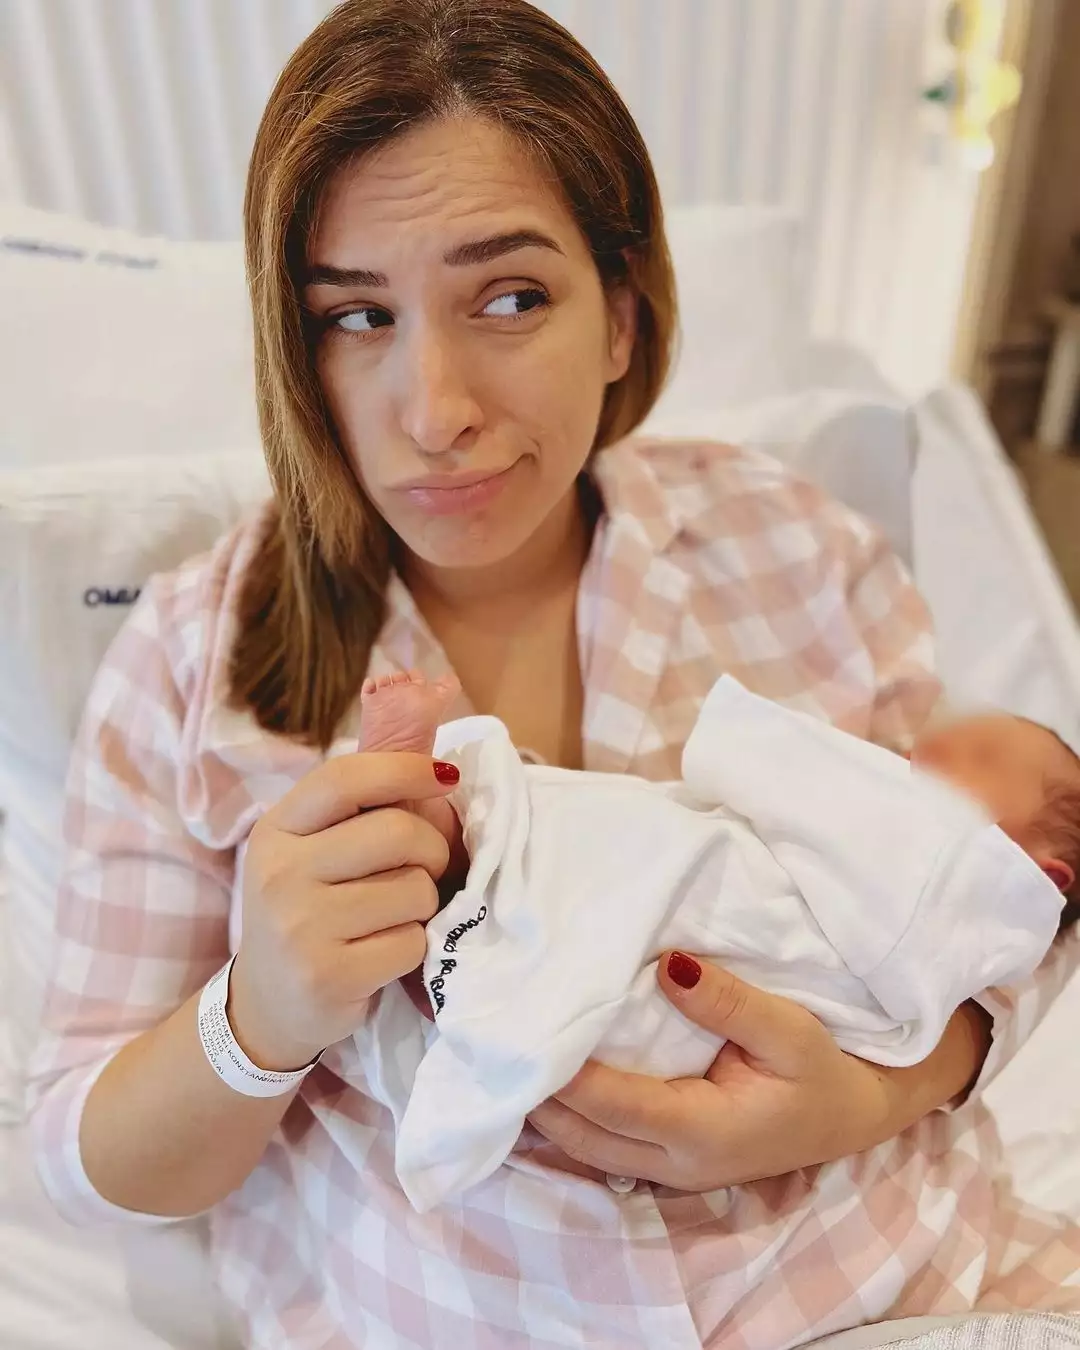 Αντιγόνη Ψυχράμη: Οι πρώτες ΦΩΤΟ από το μαιευτήριο με την νεογέννητη κόρη της